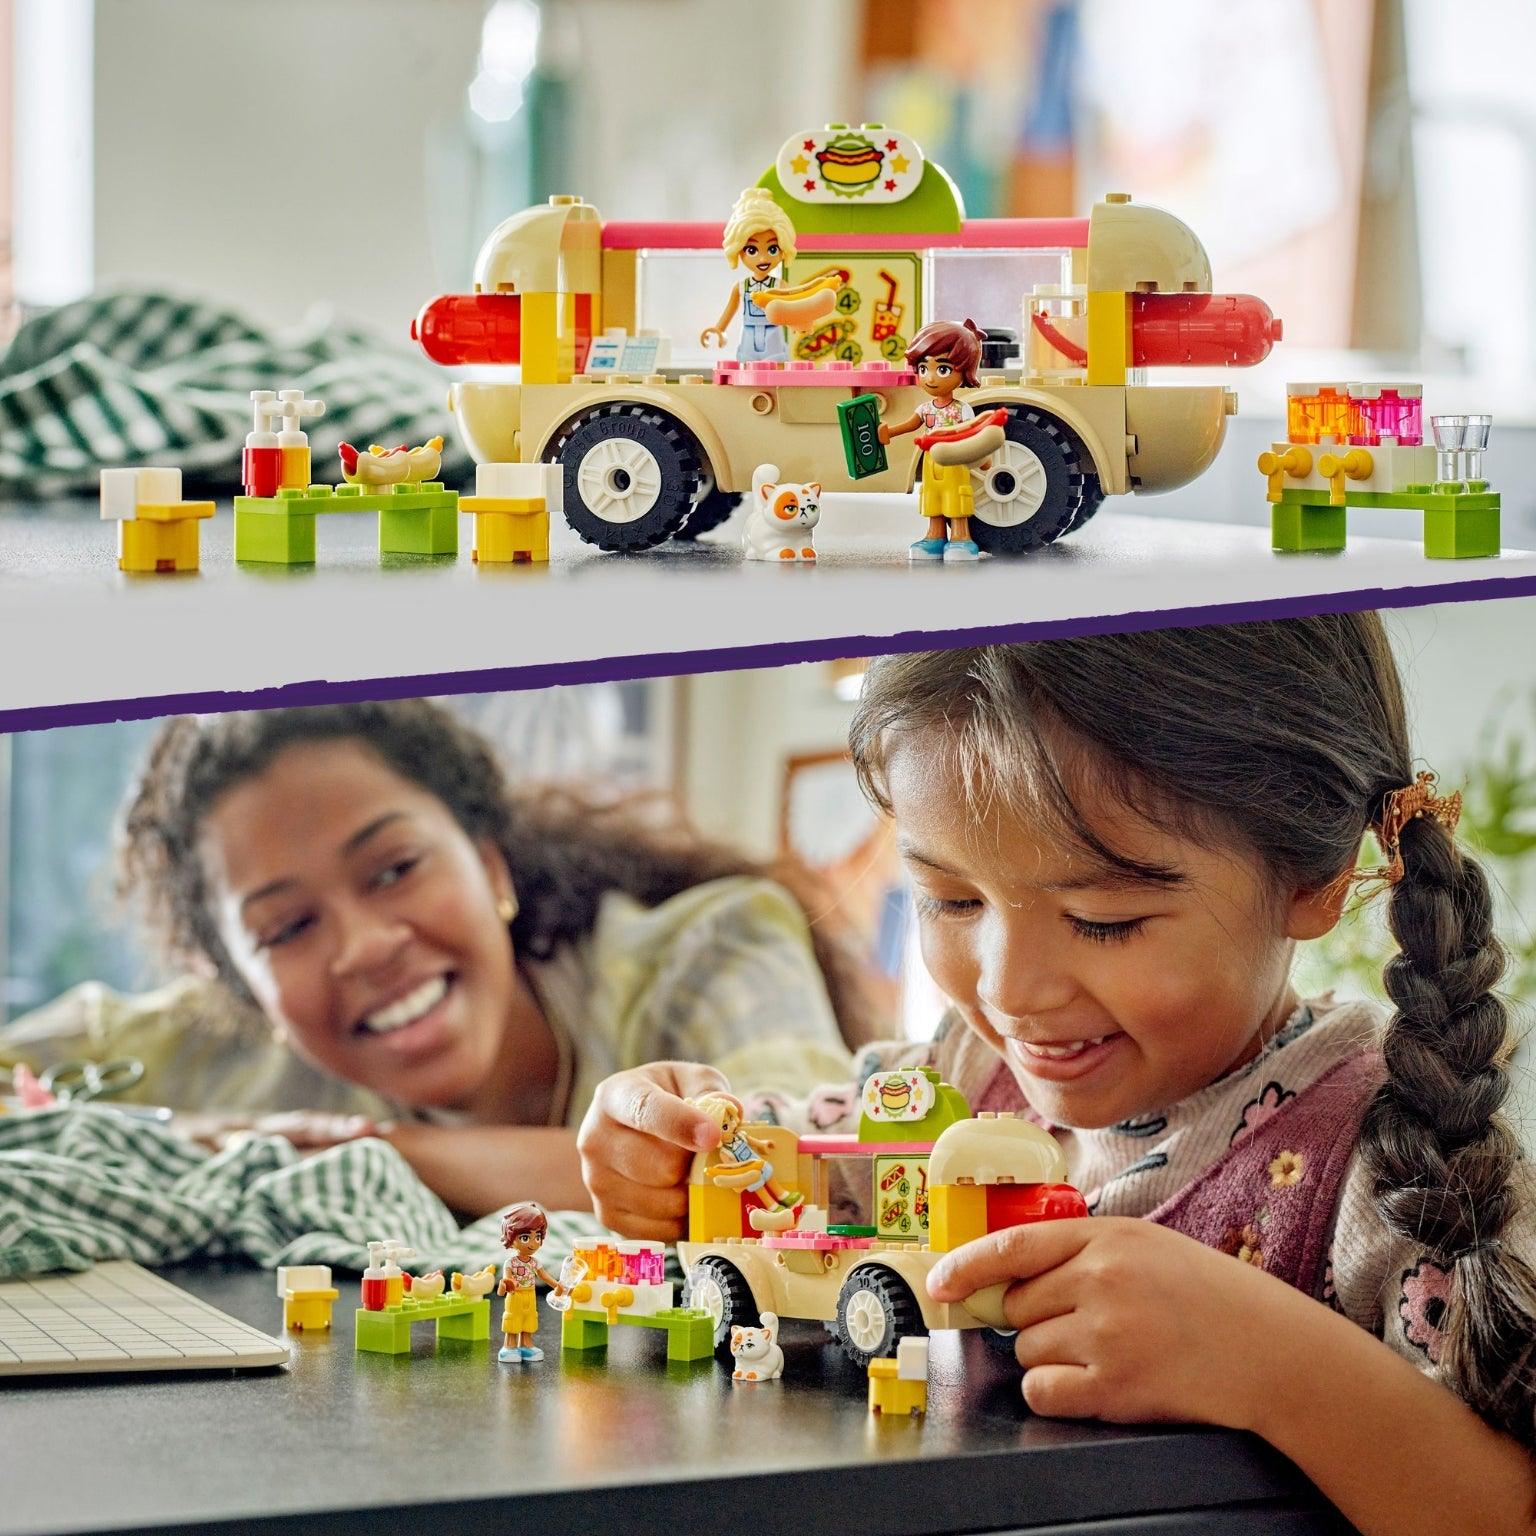 Lego Friends Camião de Cachorros-Quentes - Brincatoys